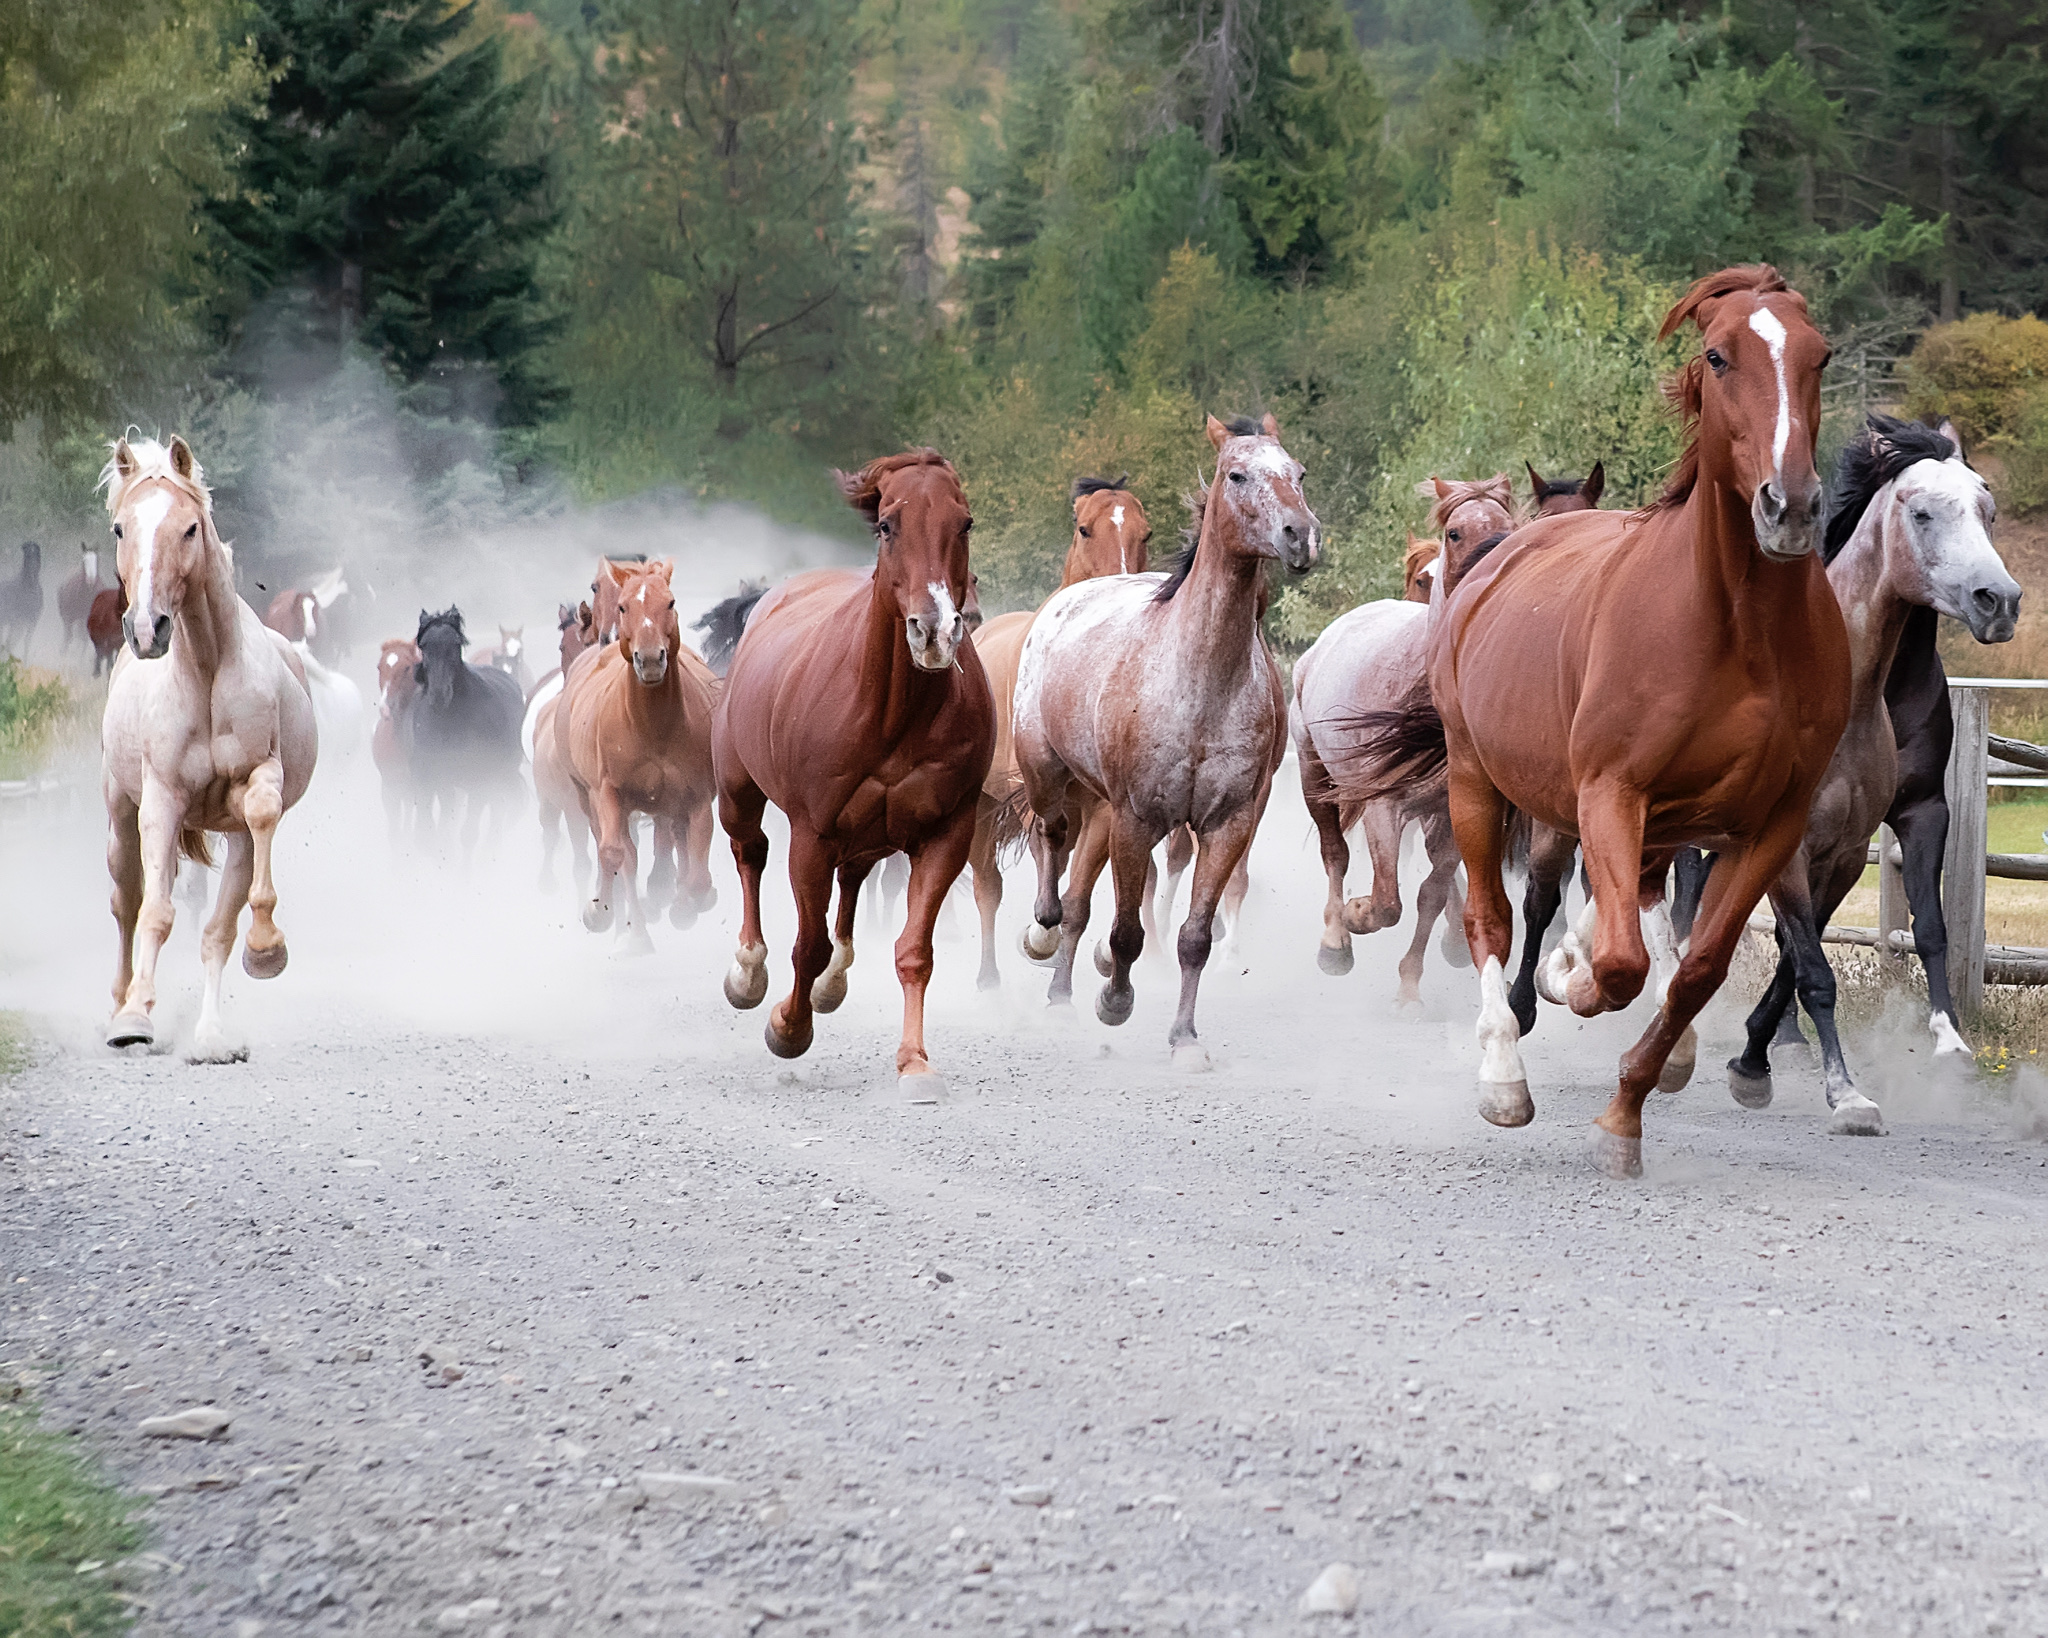 Horses galloping.